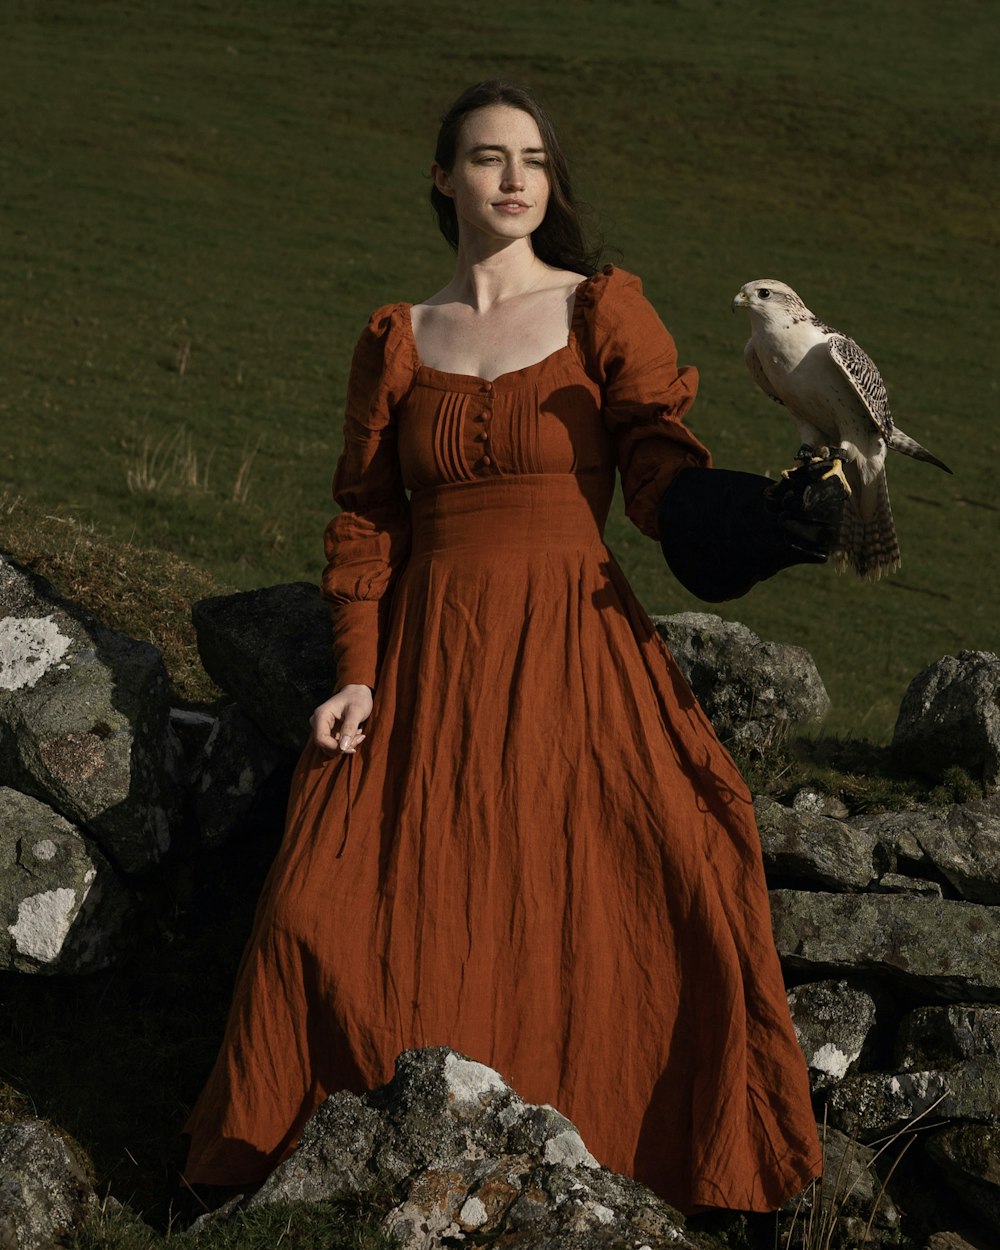 a woman in an orange dress holding a bird